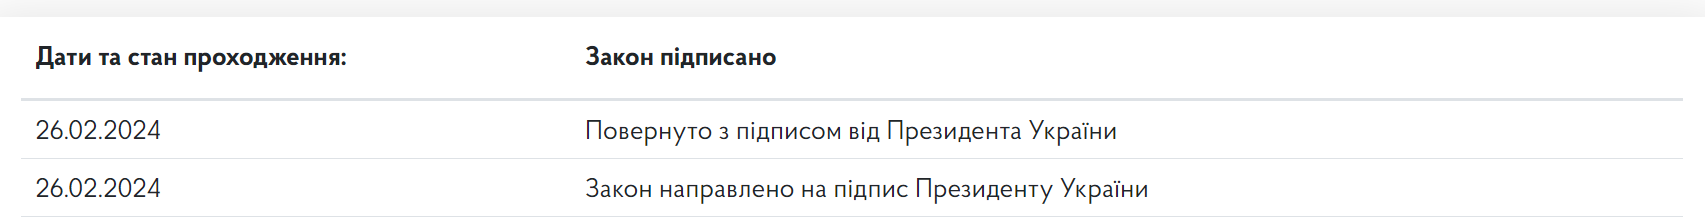 Скріншот з сайту Верховної Ради